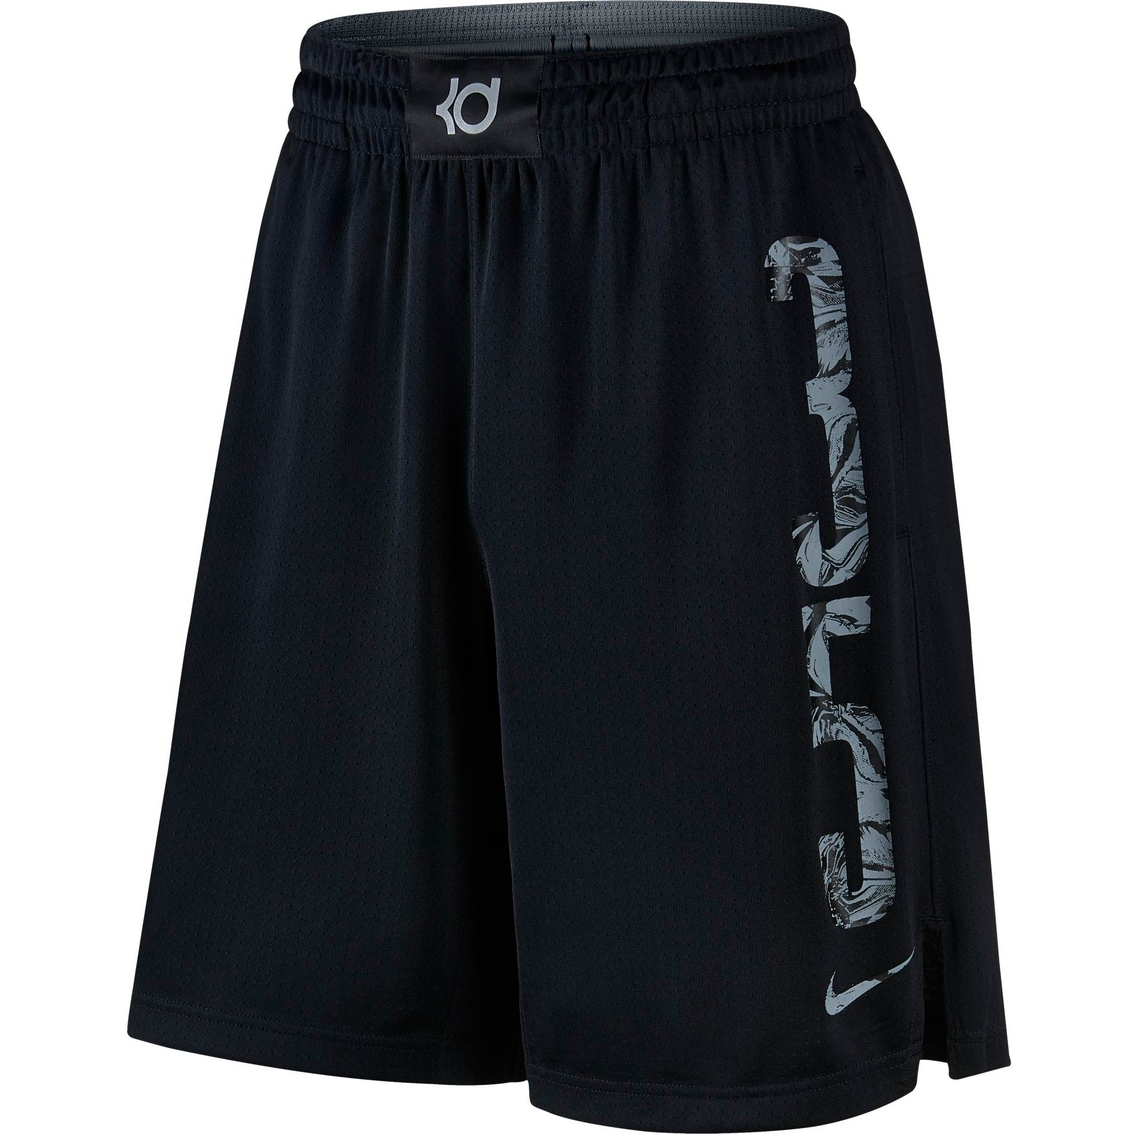 Nike Kd Shorts | Shorts | Clothing 